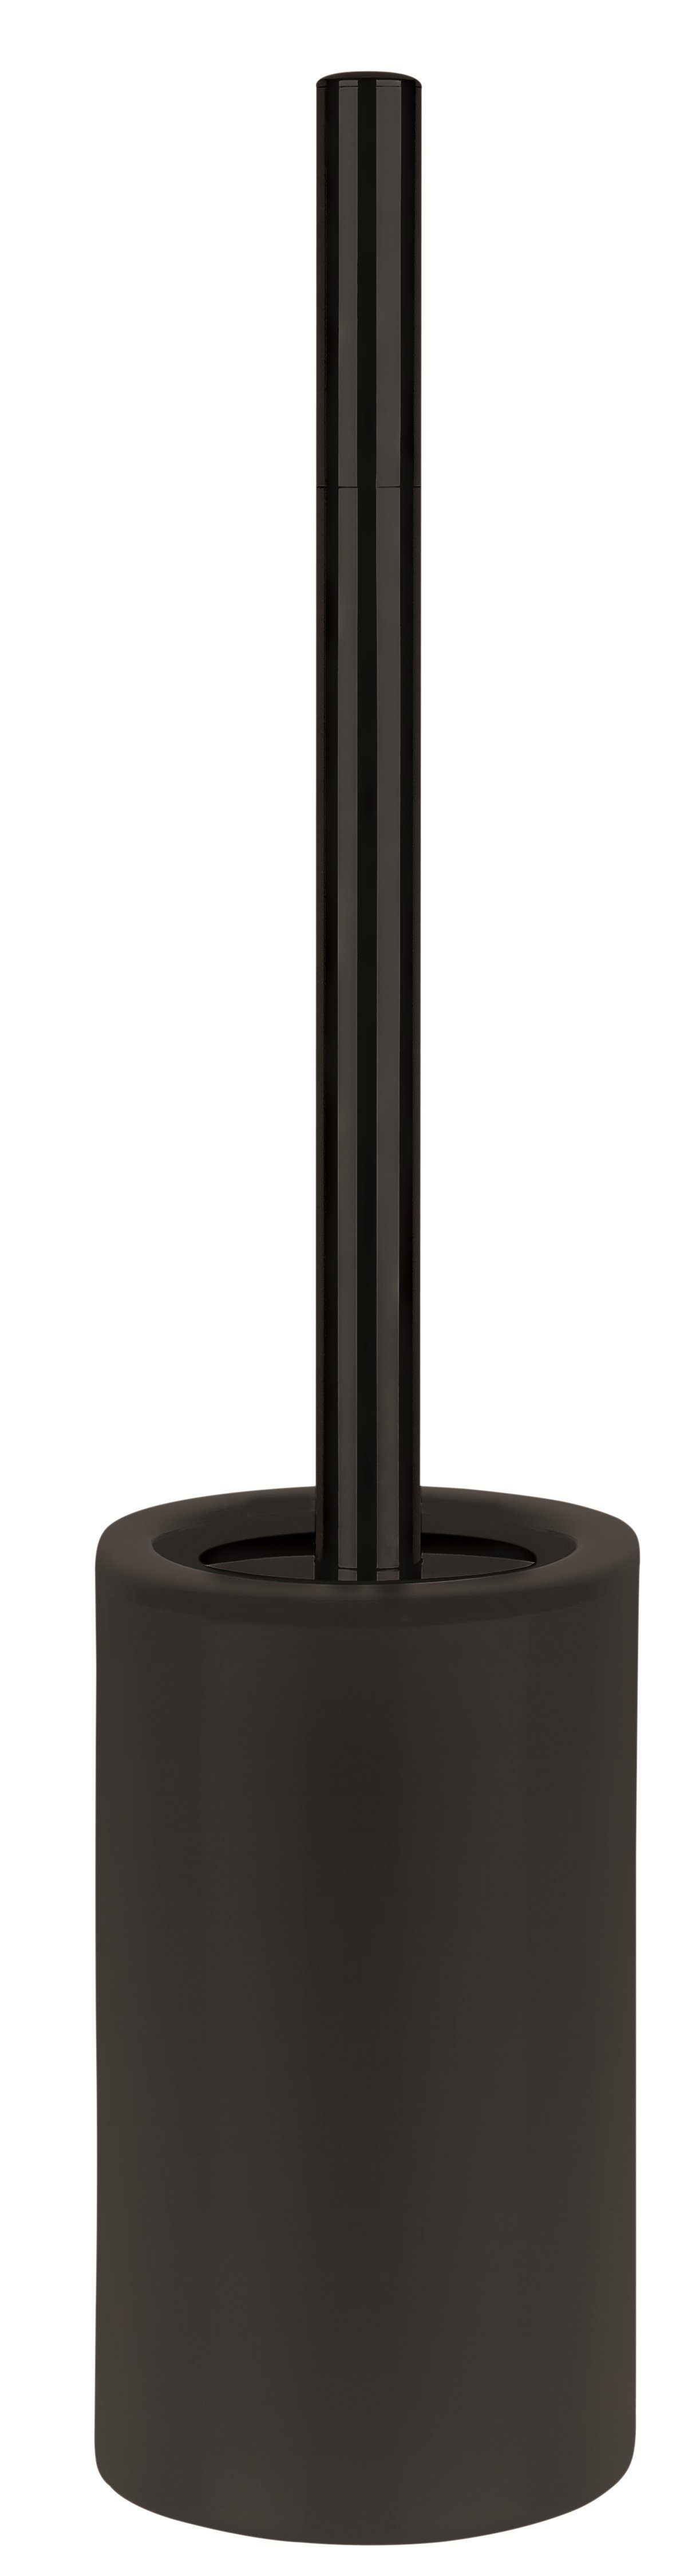 spirella Toilettenpapierhalter WC-Bürste TUBE-MATT, Toilettenbürste aus  hochwertiger Keramik, schwarz, elegante Matt-Optik, Passend zu anderen  Bad-Accessoires der Serie TUBE-MATT